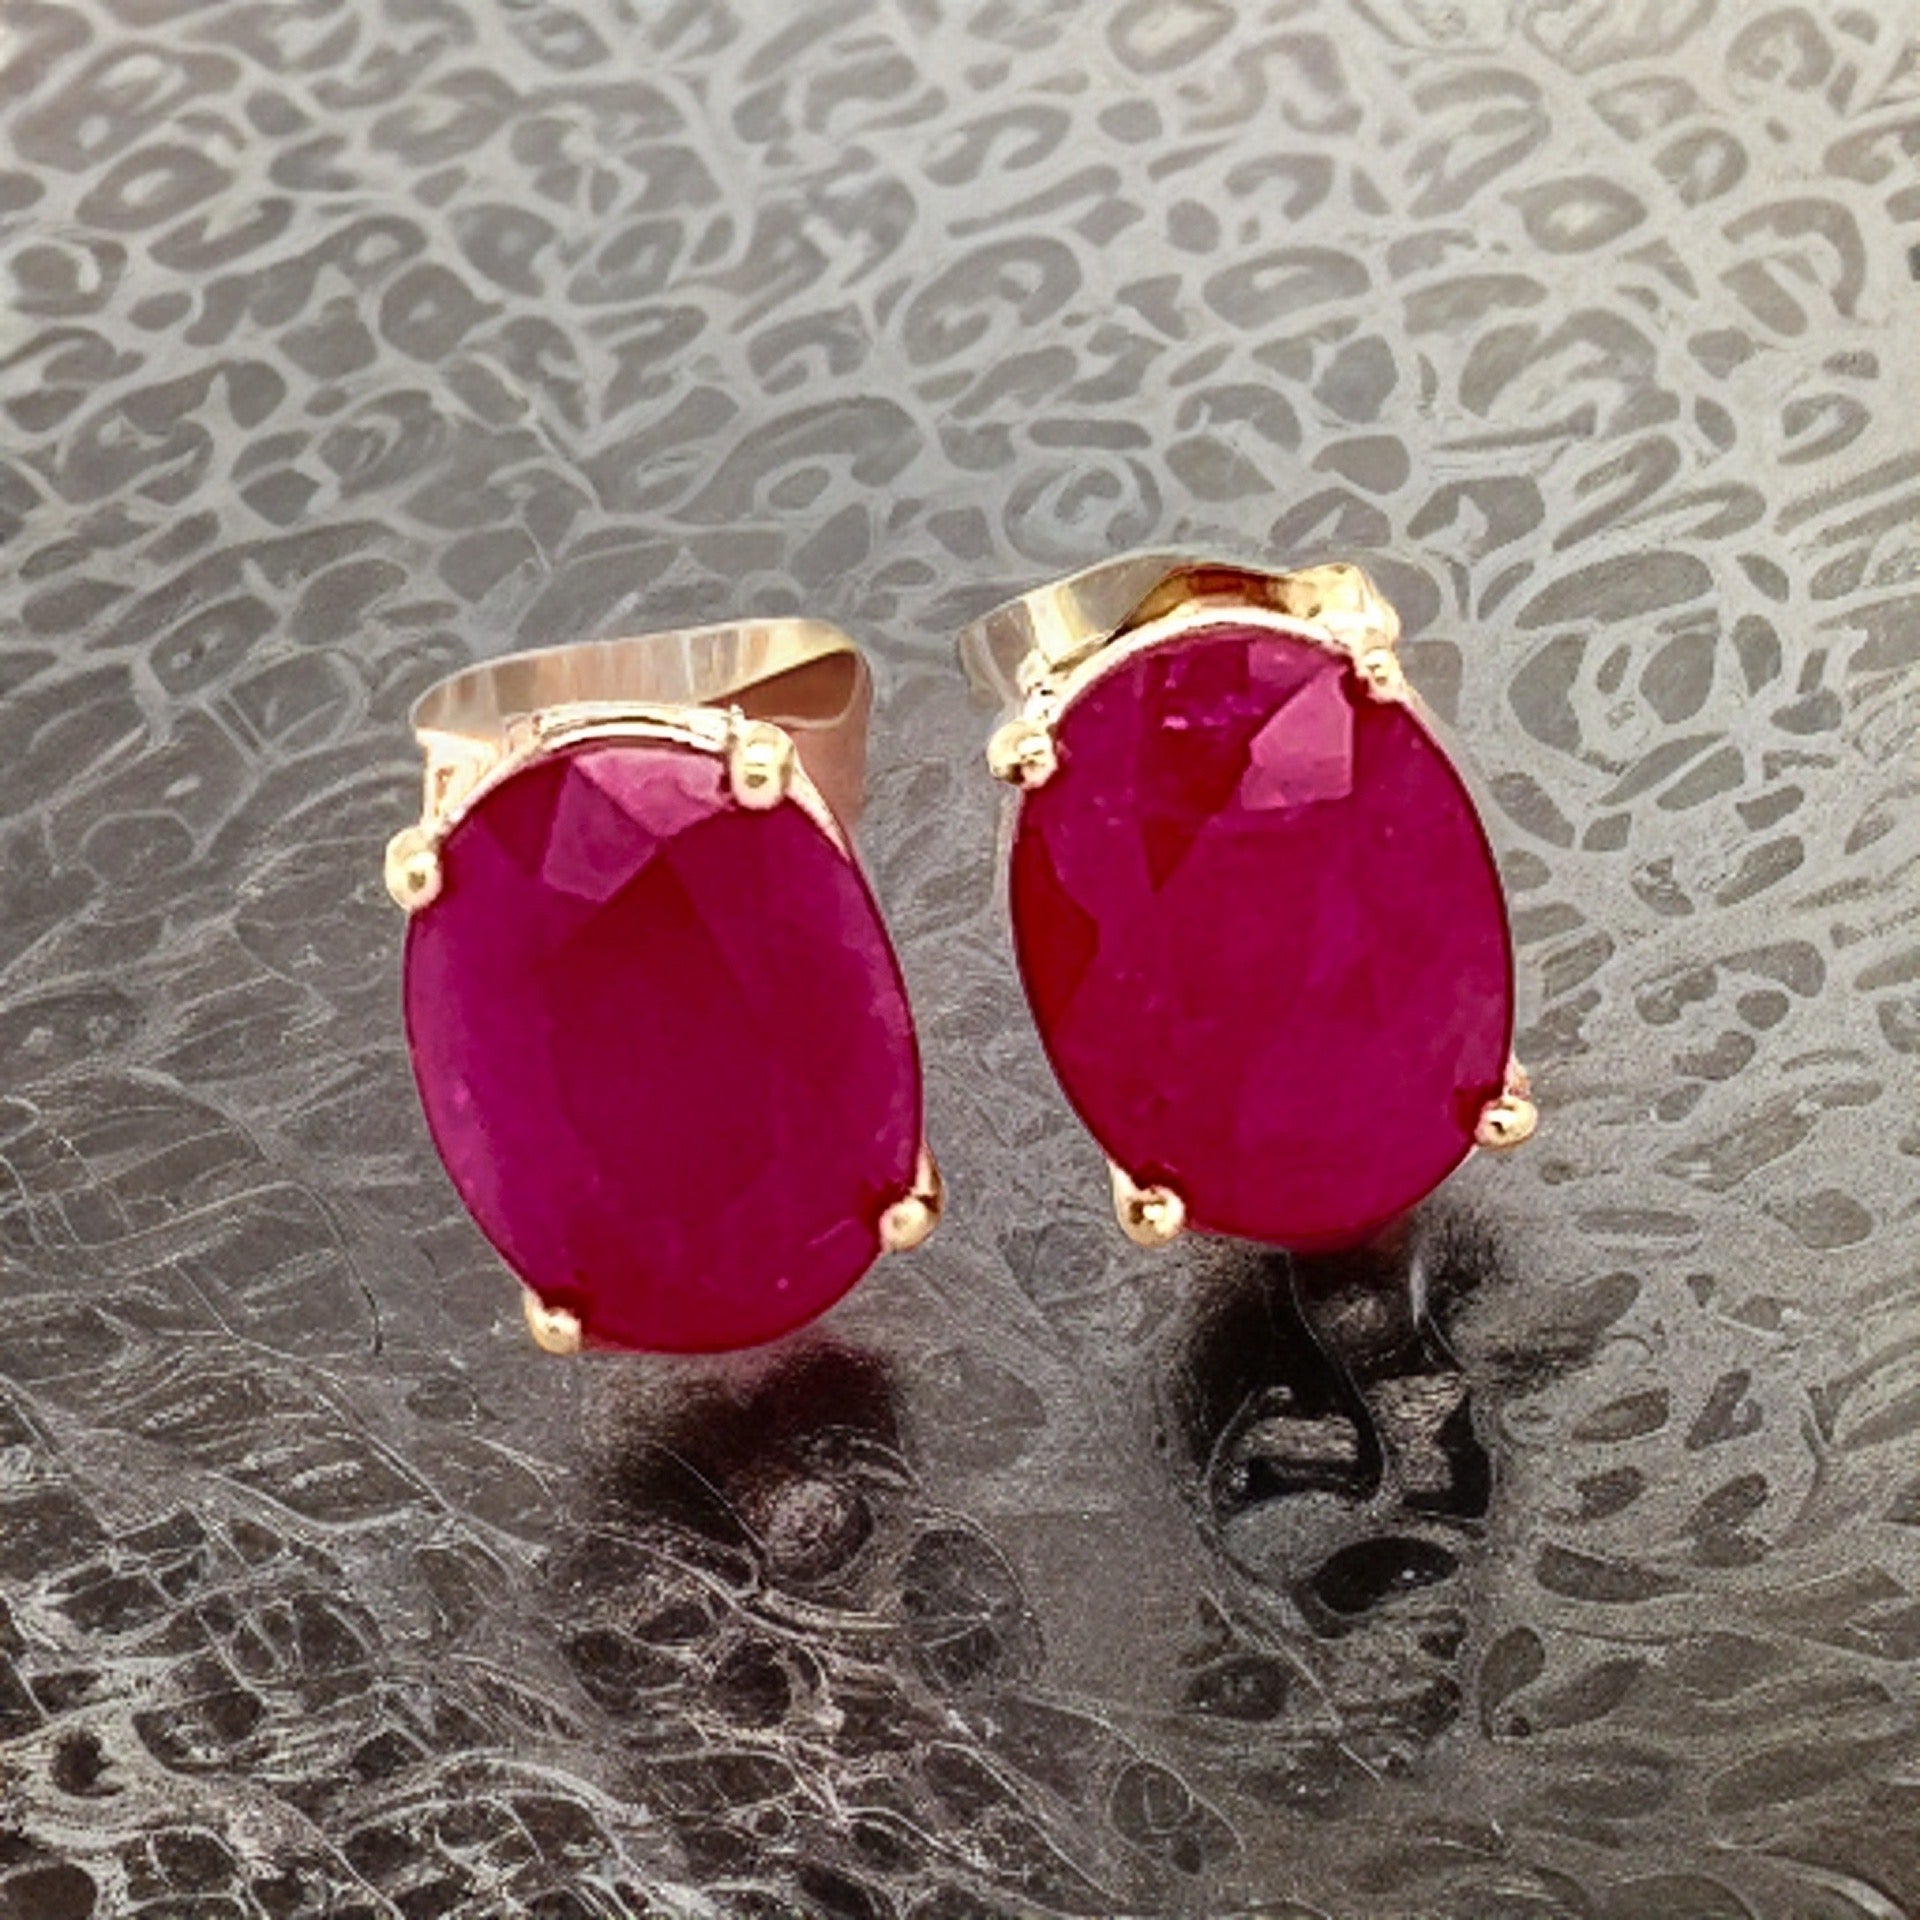 Natural Ruby Stud Earrings 14k Gold 6.75 TCW Certified $3,790 210751 - Certified Fine Jewelry